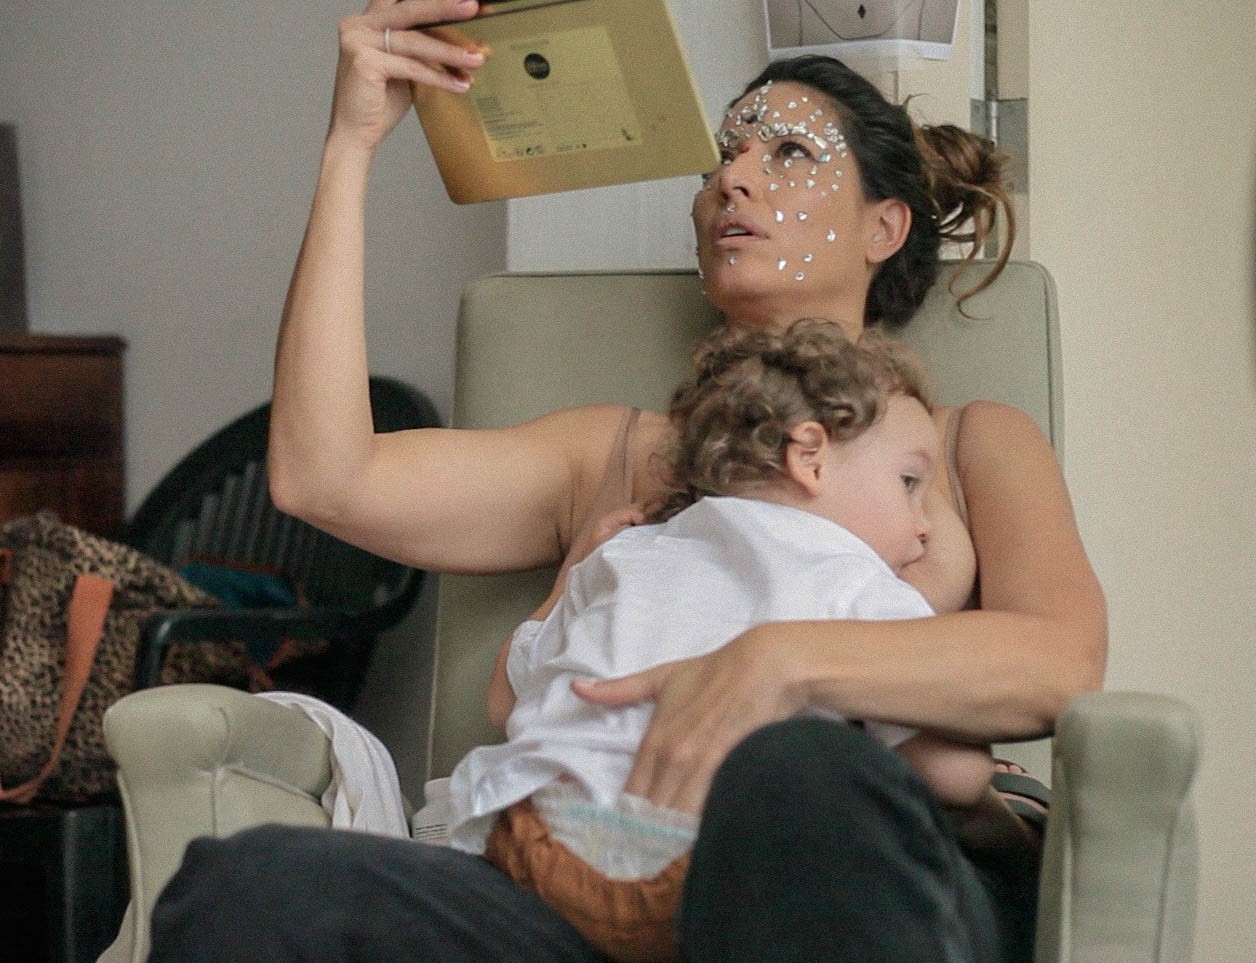 Giselle amamentou o filho durante as gravações (Foto: Divulgação)